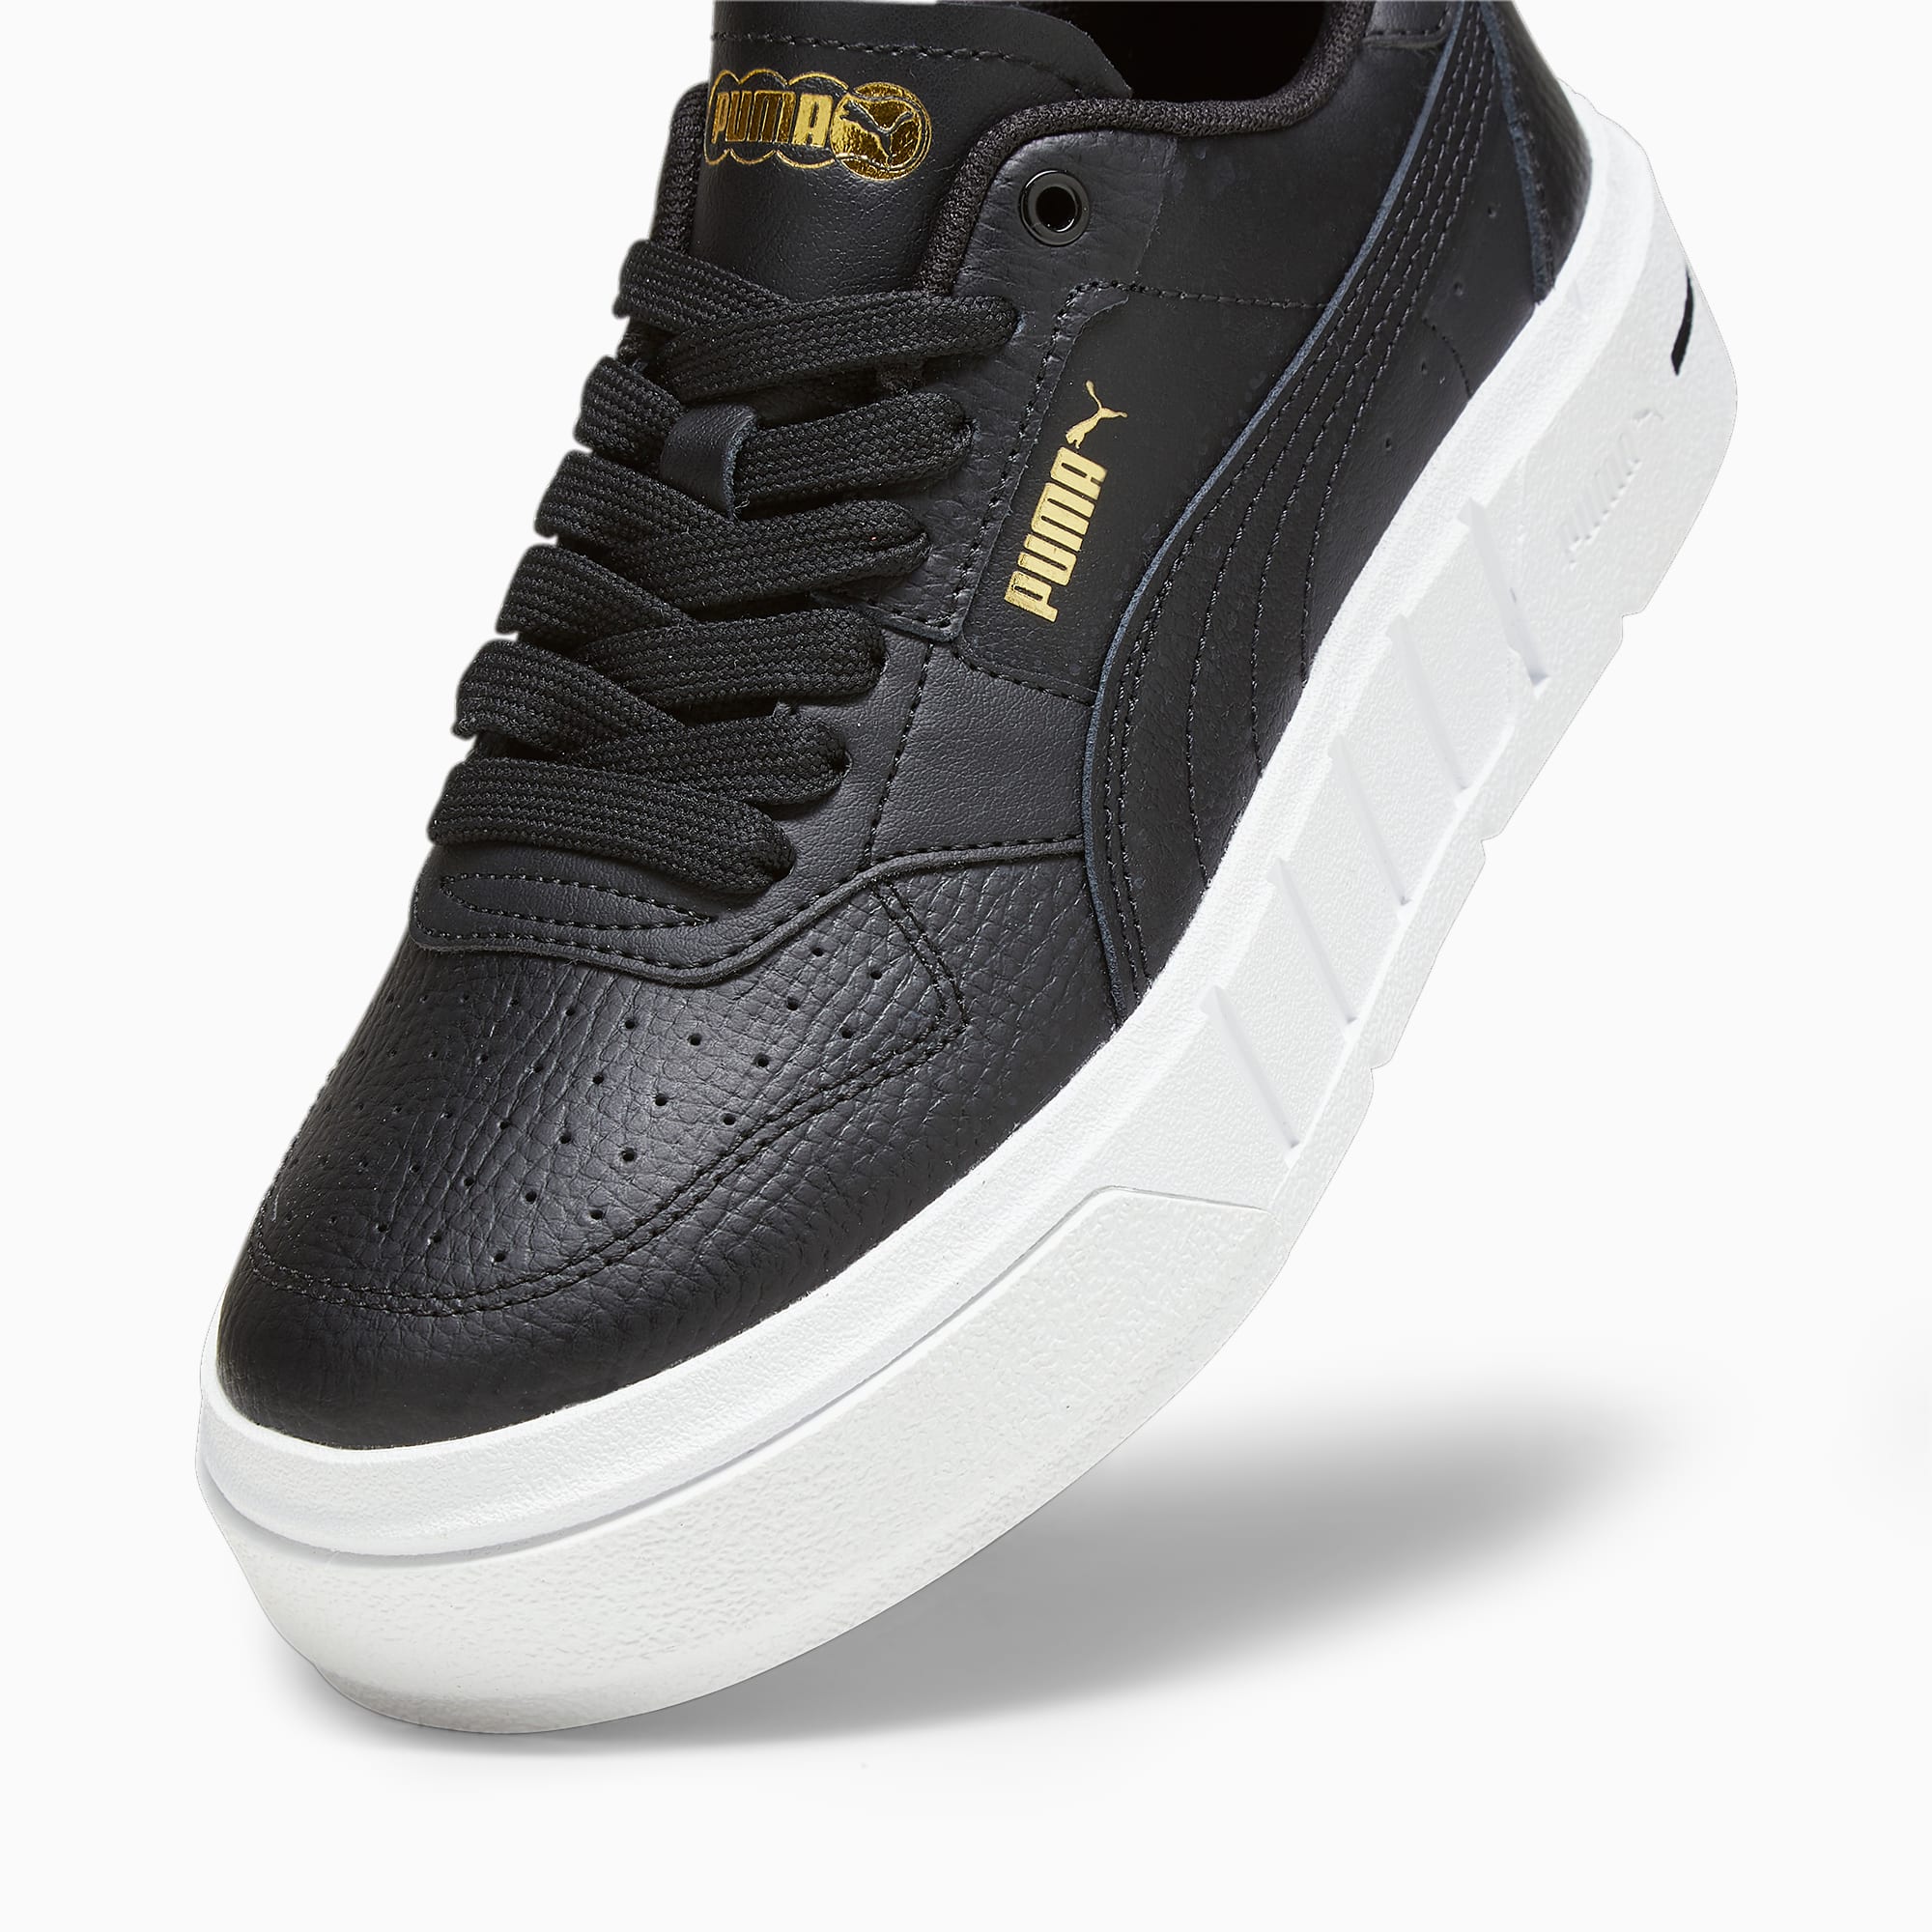 PUMA Cali Court Leder-Sneakers Teenager Schuhe Für Kinder, Schwarz/Weiß, Größe: 36, Schuhe